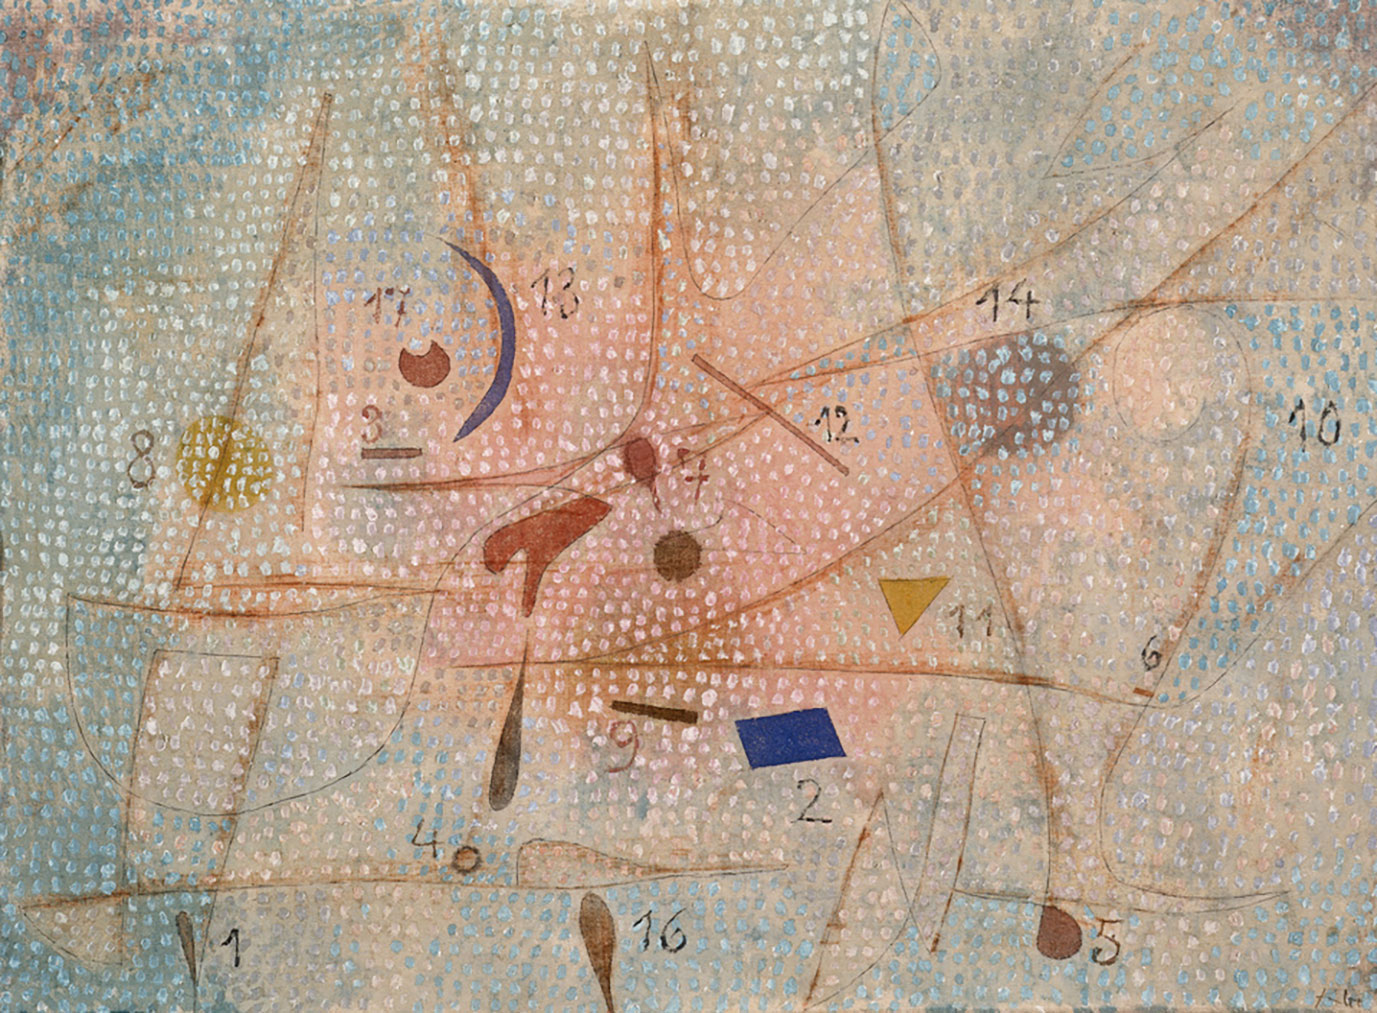 Paul Klee, "17 Gewürze 1932.69 (M 9)" (17 épices), 1932